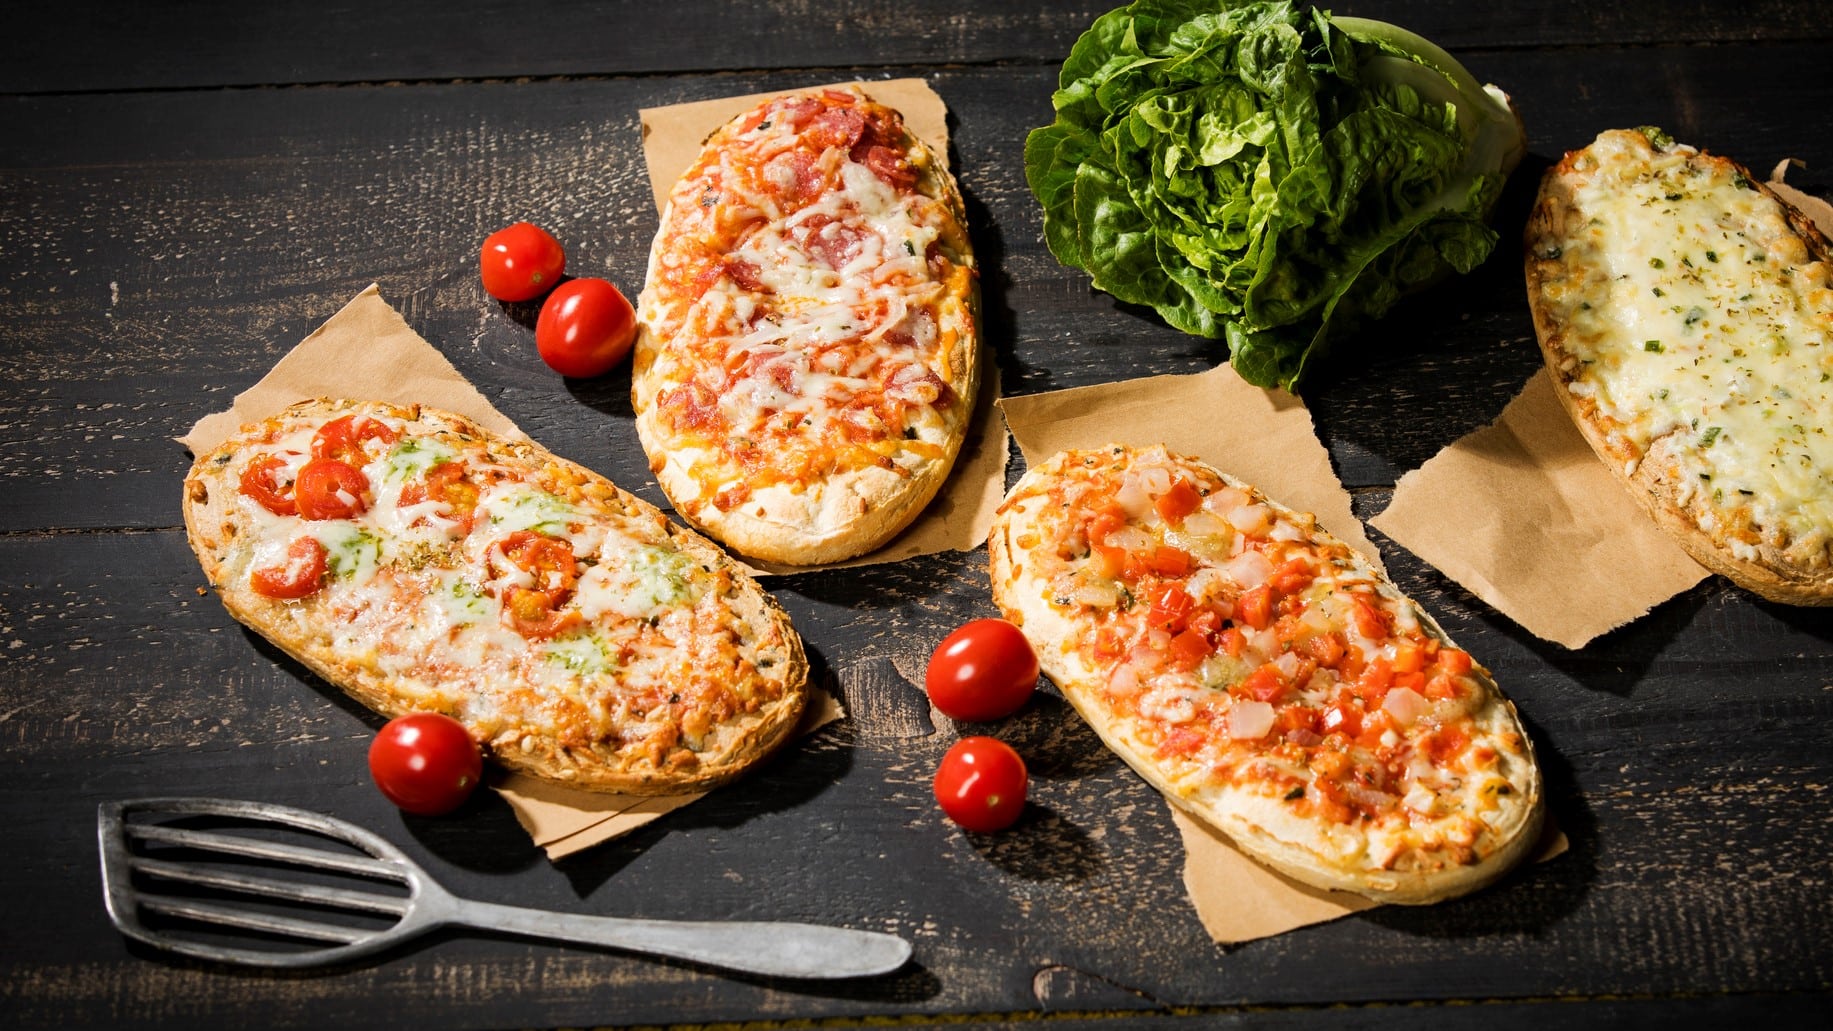 Drei vegane Pizzabrötchen auf Backpapier, daneben liegen kleine Tomaten und ein Pfannenwender.